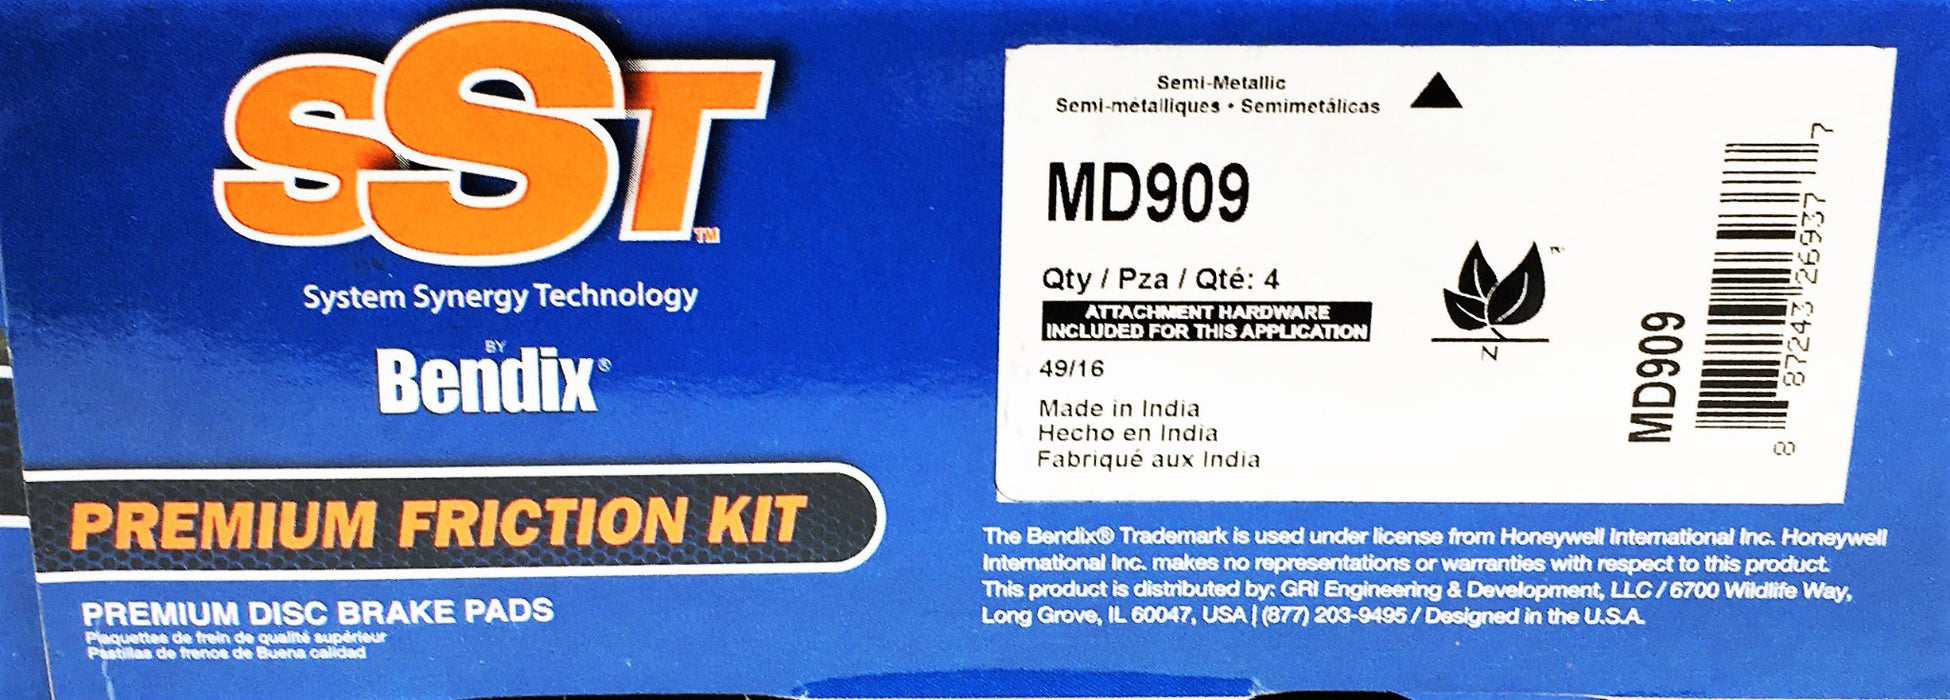 Bendix SST Premium Friction Kit Semi Metallic Disc Brake Pads MD909 NOS